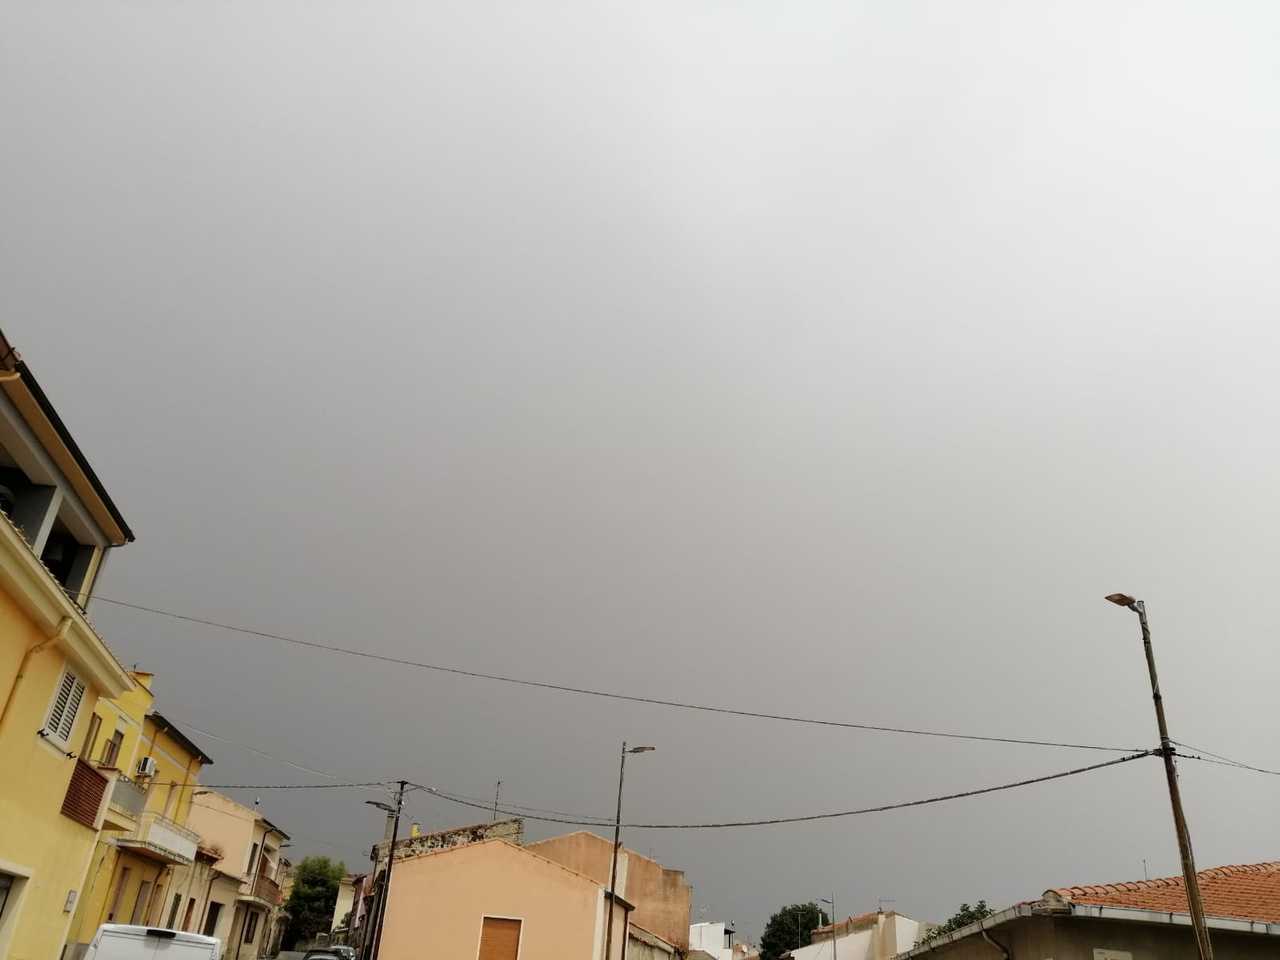 WhatsApp Image 2021 08 10 at 13.29.50 3 - Meteo Sardegna: Oggi CALDO a 45 gradi. Il REFRIGERIO in Sardegna